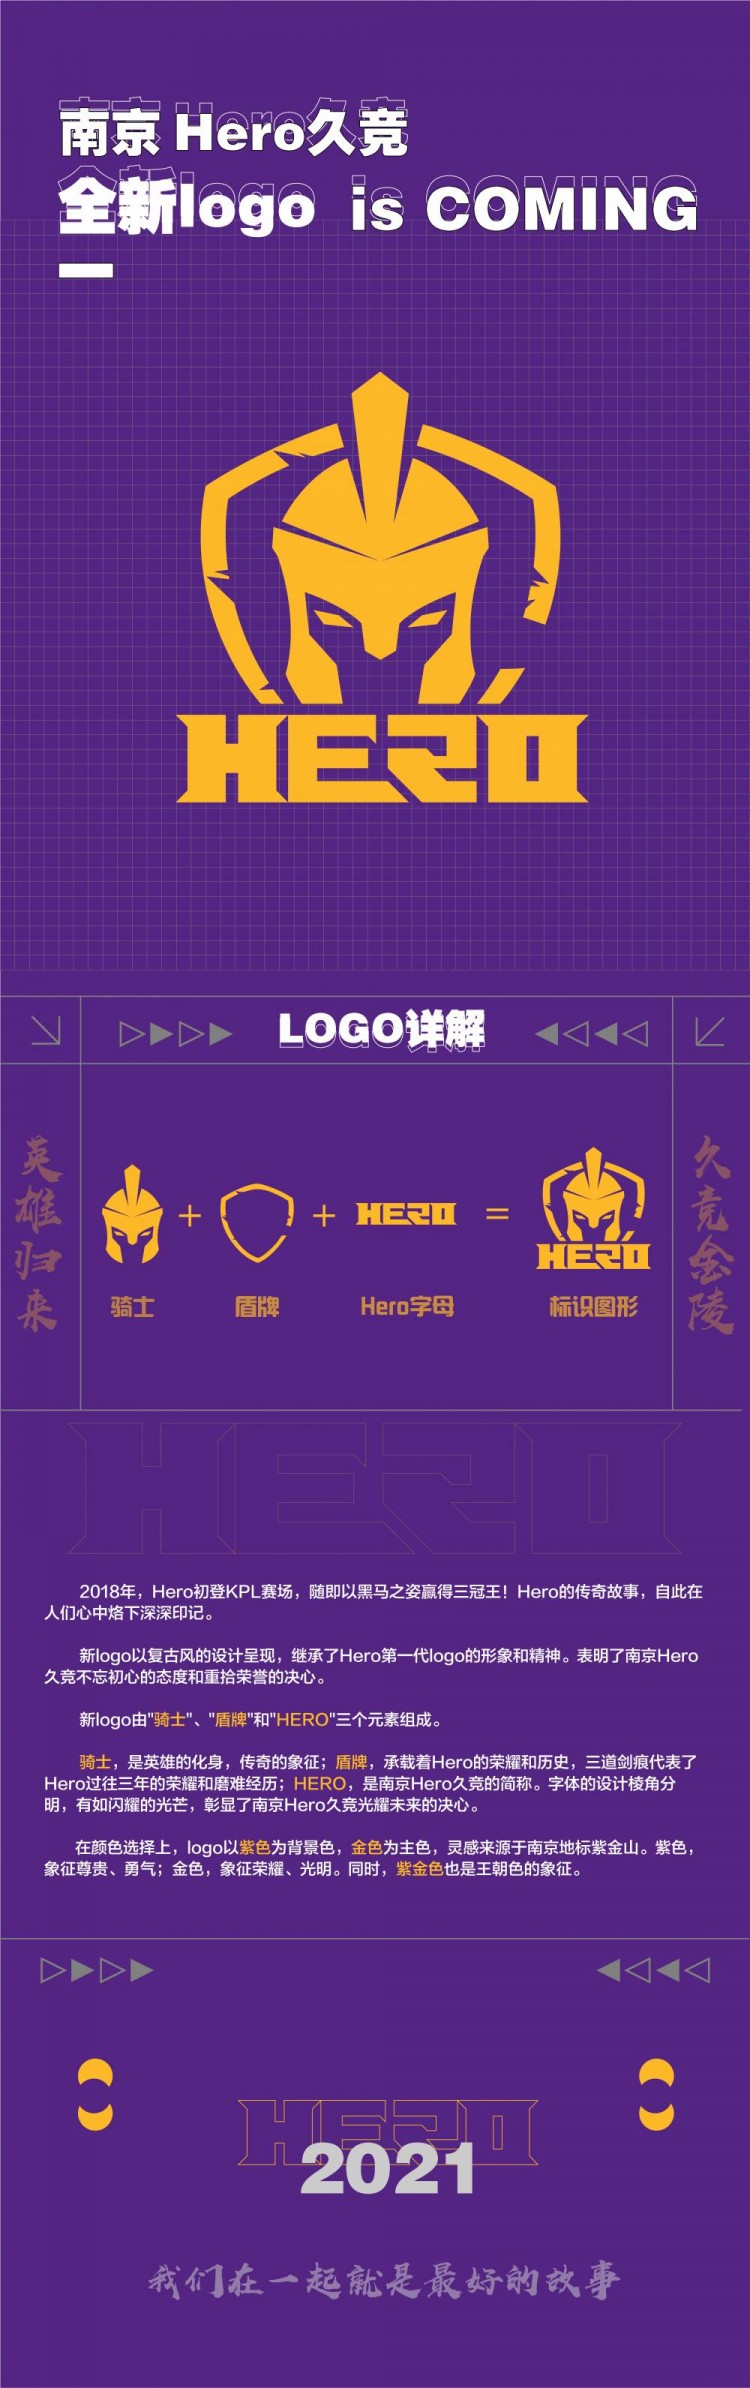 南京hero久竞官方正式更换logo